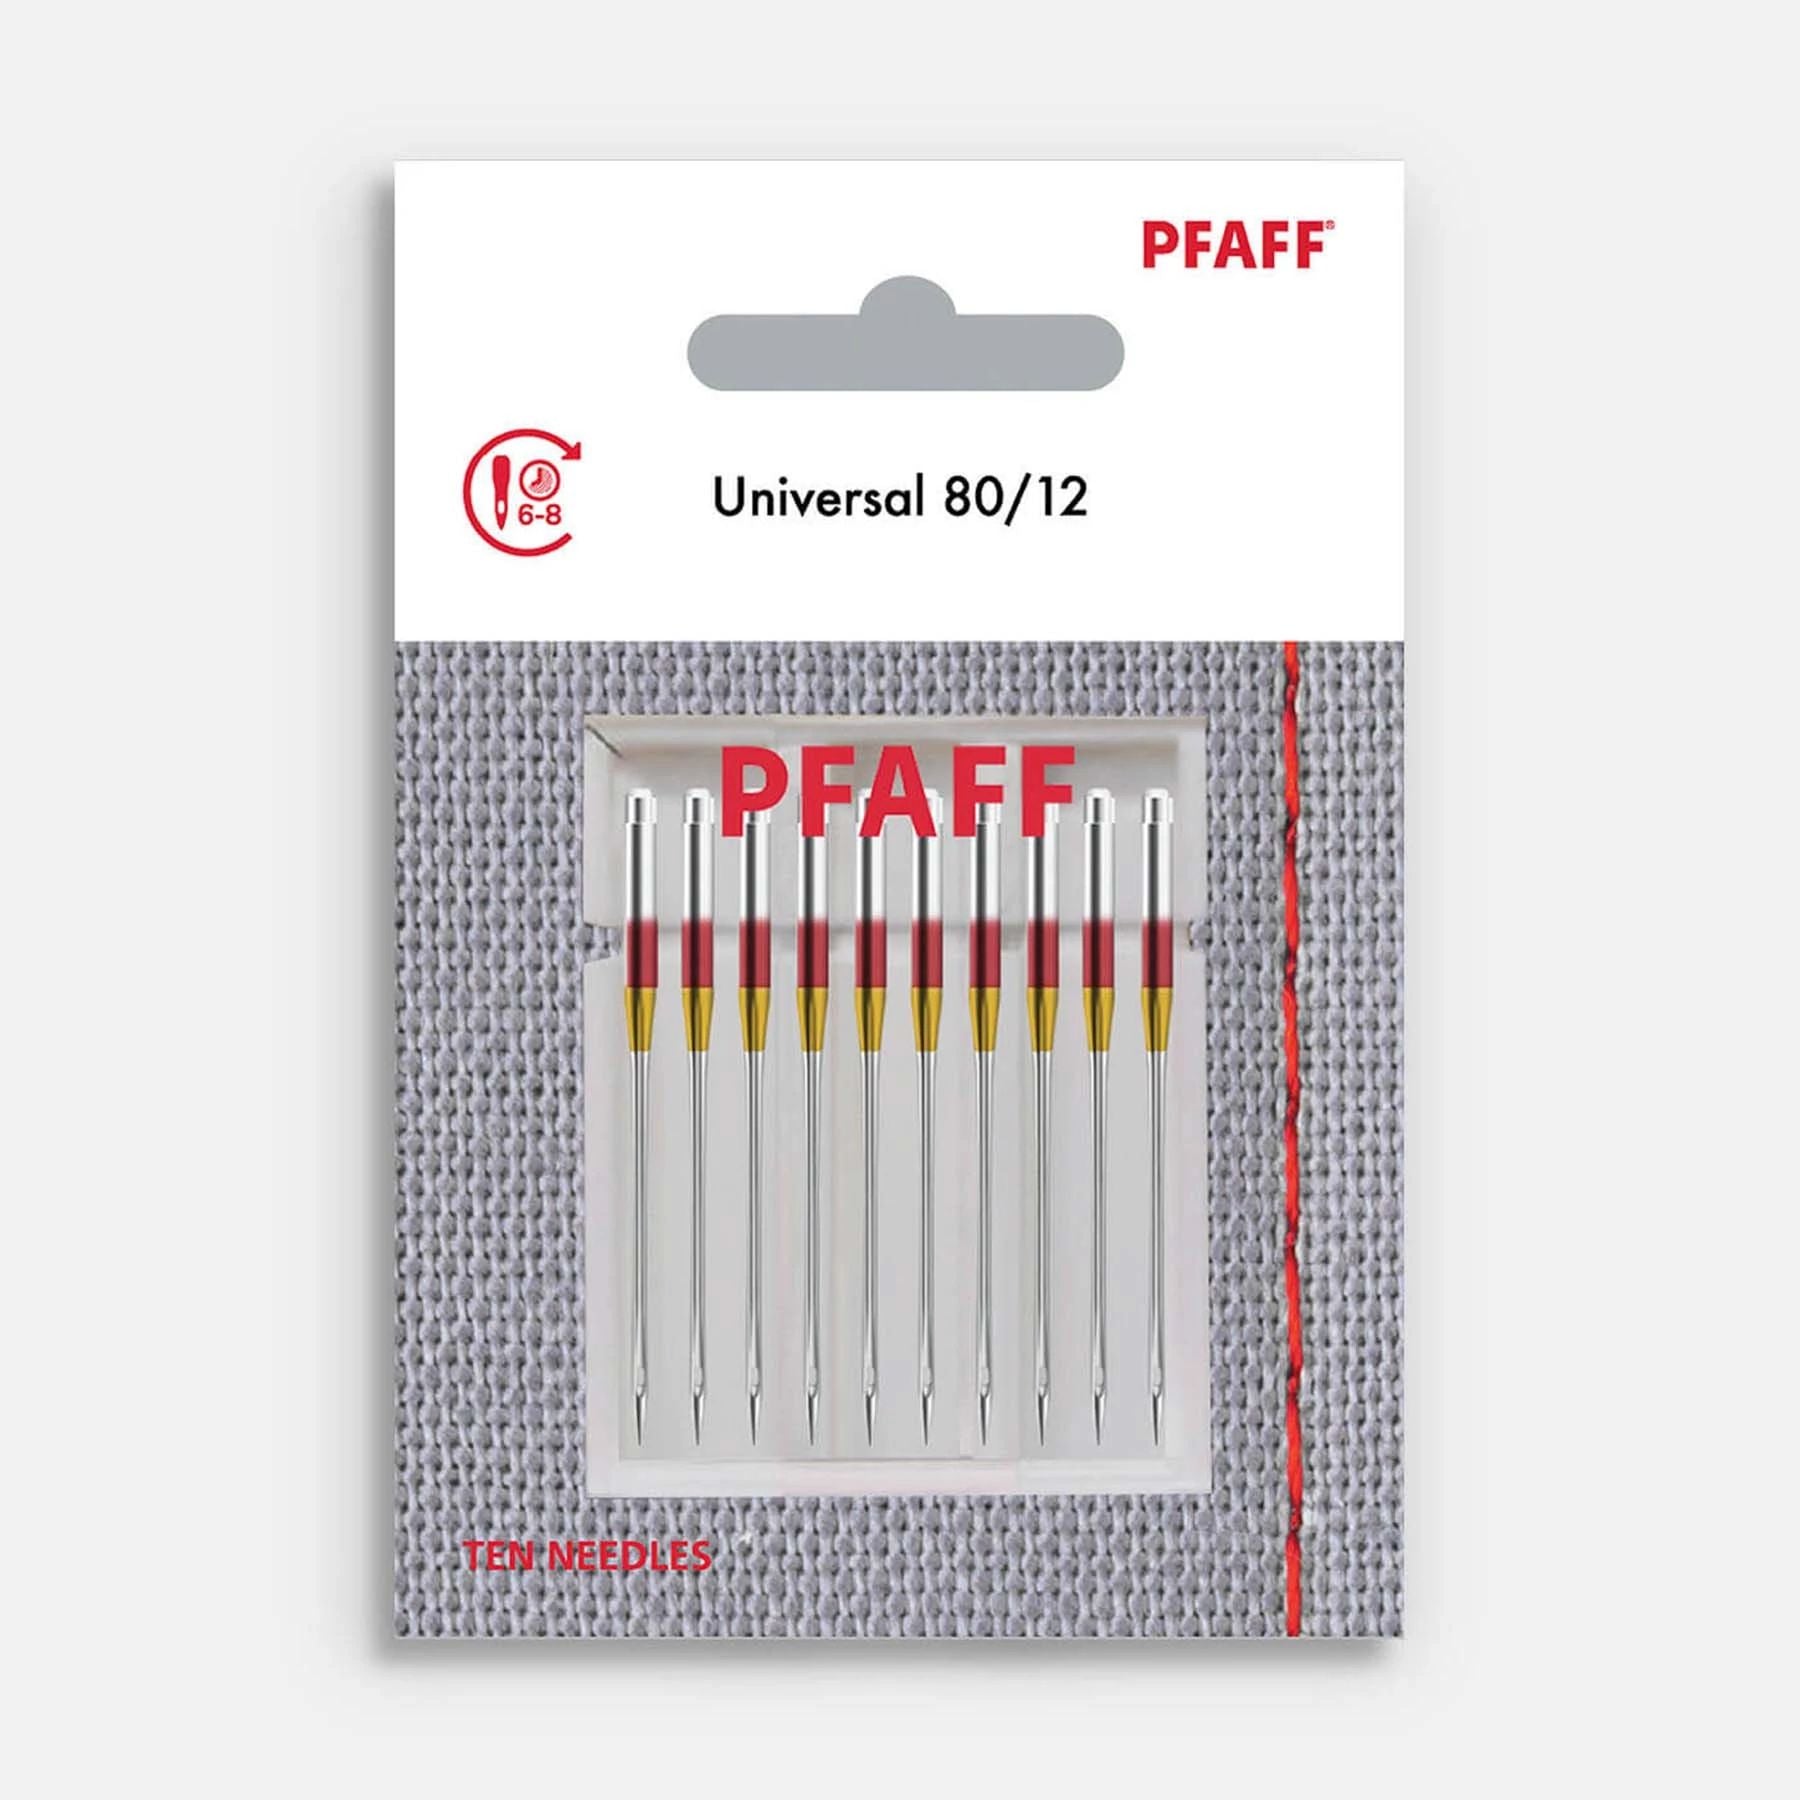 PFAFF® Universal Needles Size 80/12 10-Pack | PFAFF®